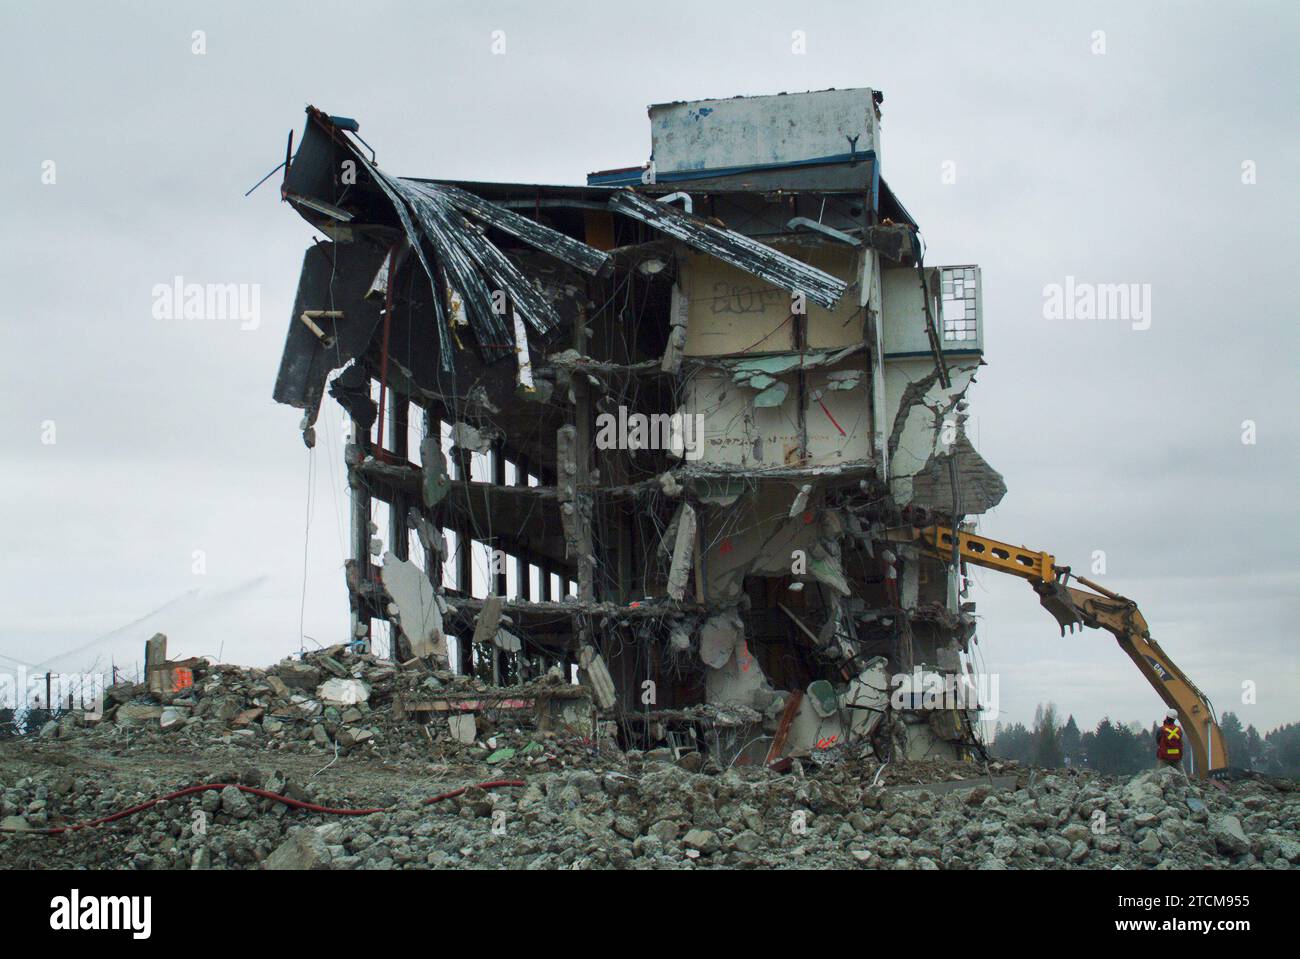 St Vincent's Hospital demolition, struttura sanitaria pubblica, W. 33rd Ave e Heather St, Vancouver, BC, Canada. Foto Stock